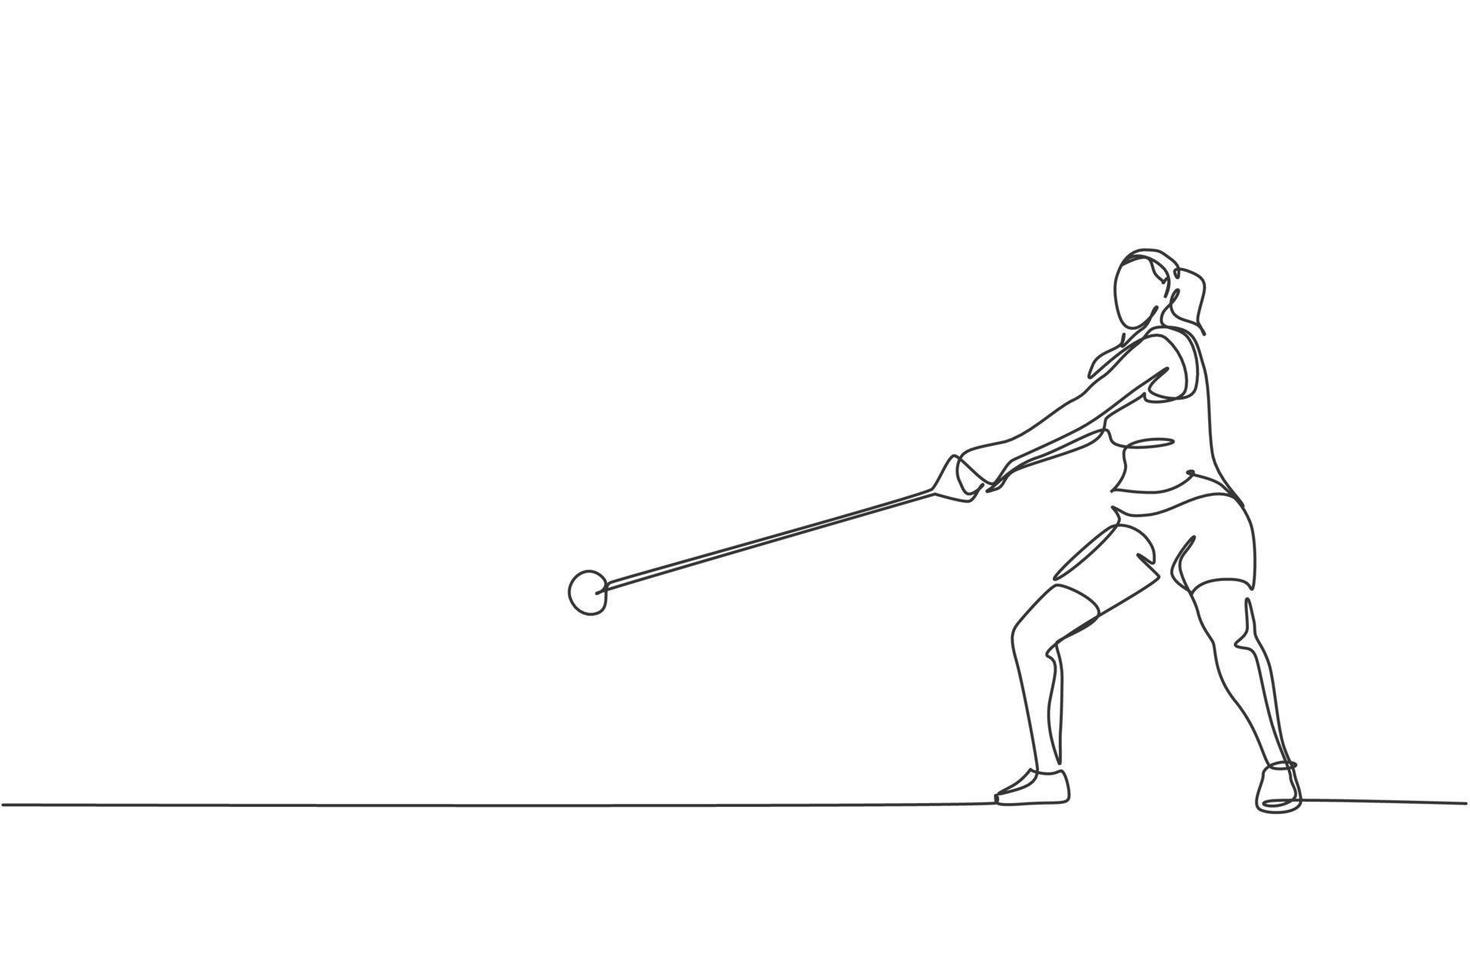 um desenho de linha contínua do exercício desportivo jovem para se concentrar antes de jogar o martelo pesado no campo. jogos atléticos. conceito de esporte olímpico. ilustração em vetor design de desenho de linha única dinâmica